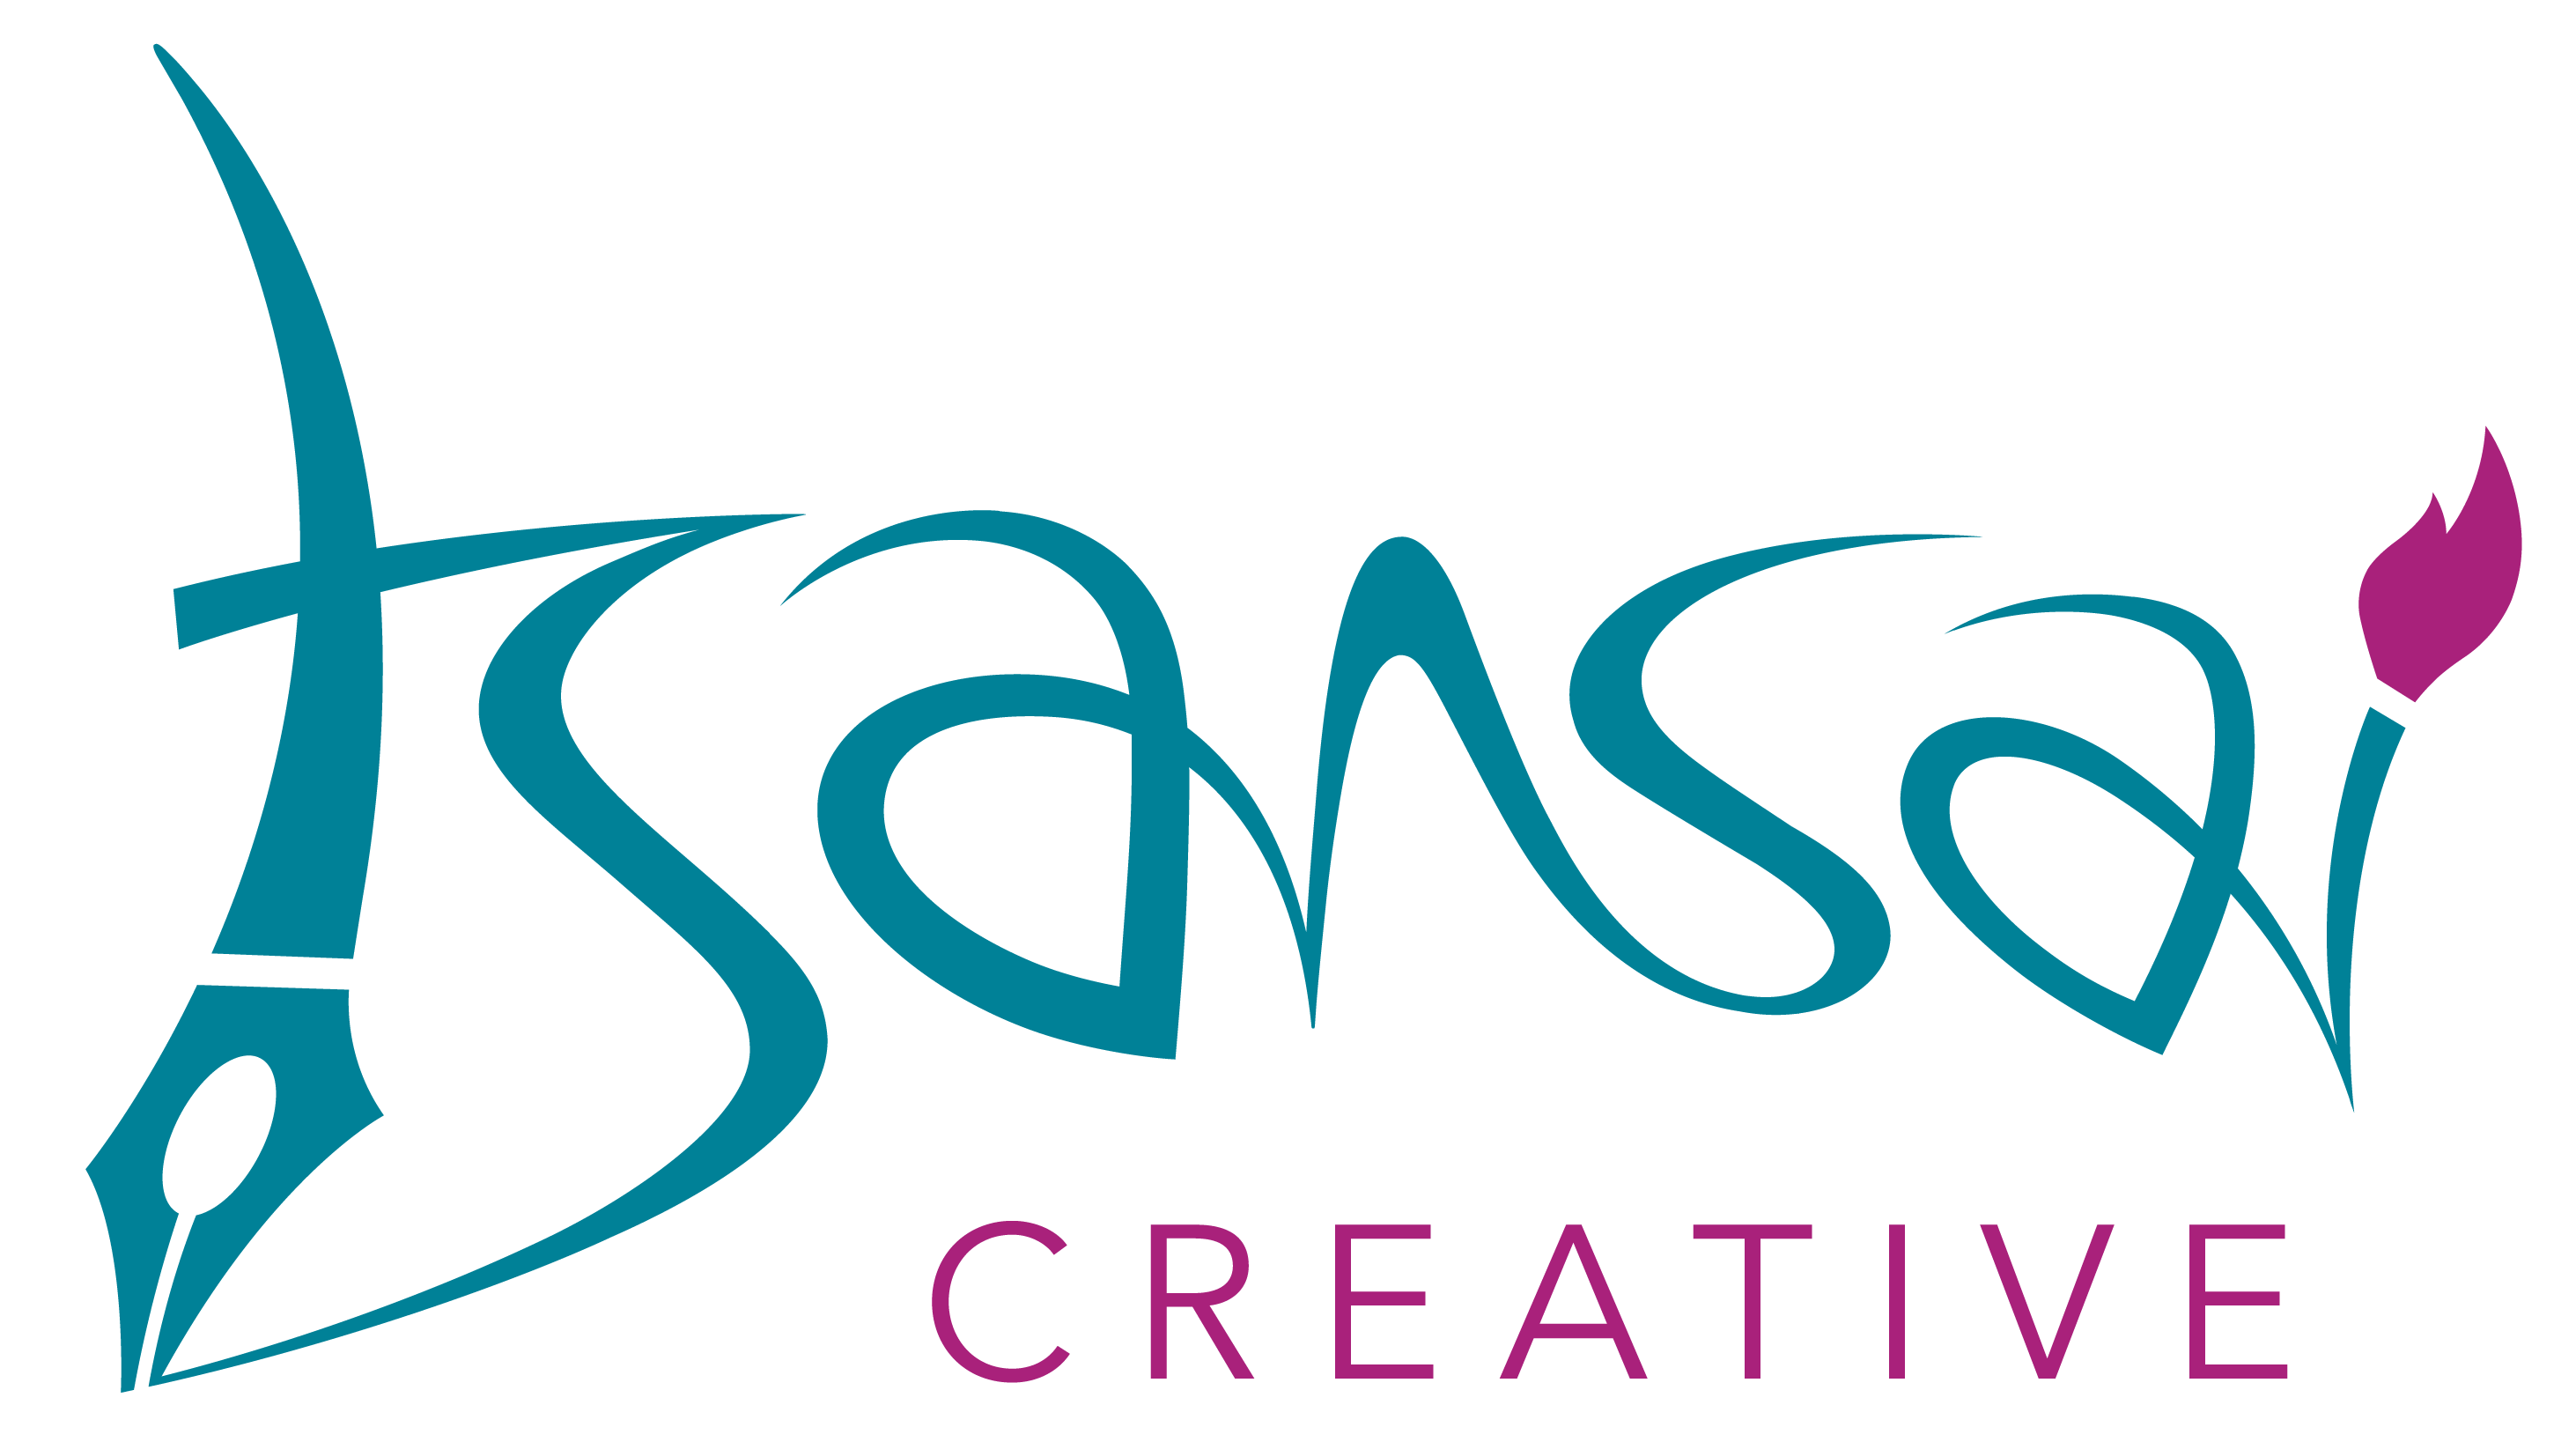 Tsansai Creative Services